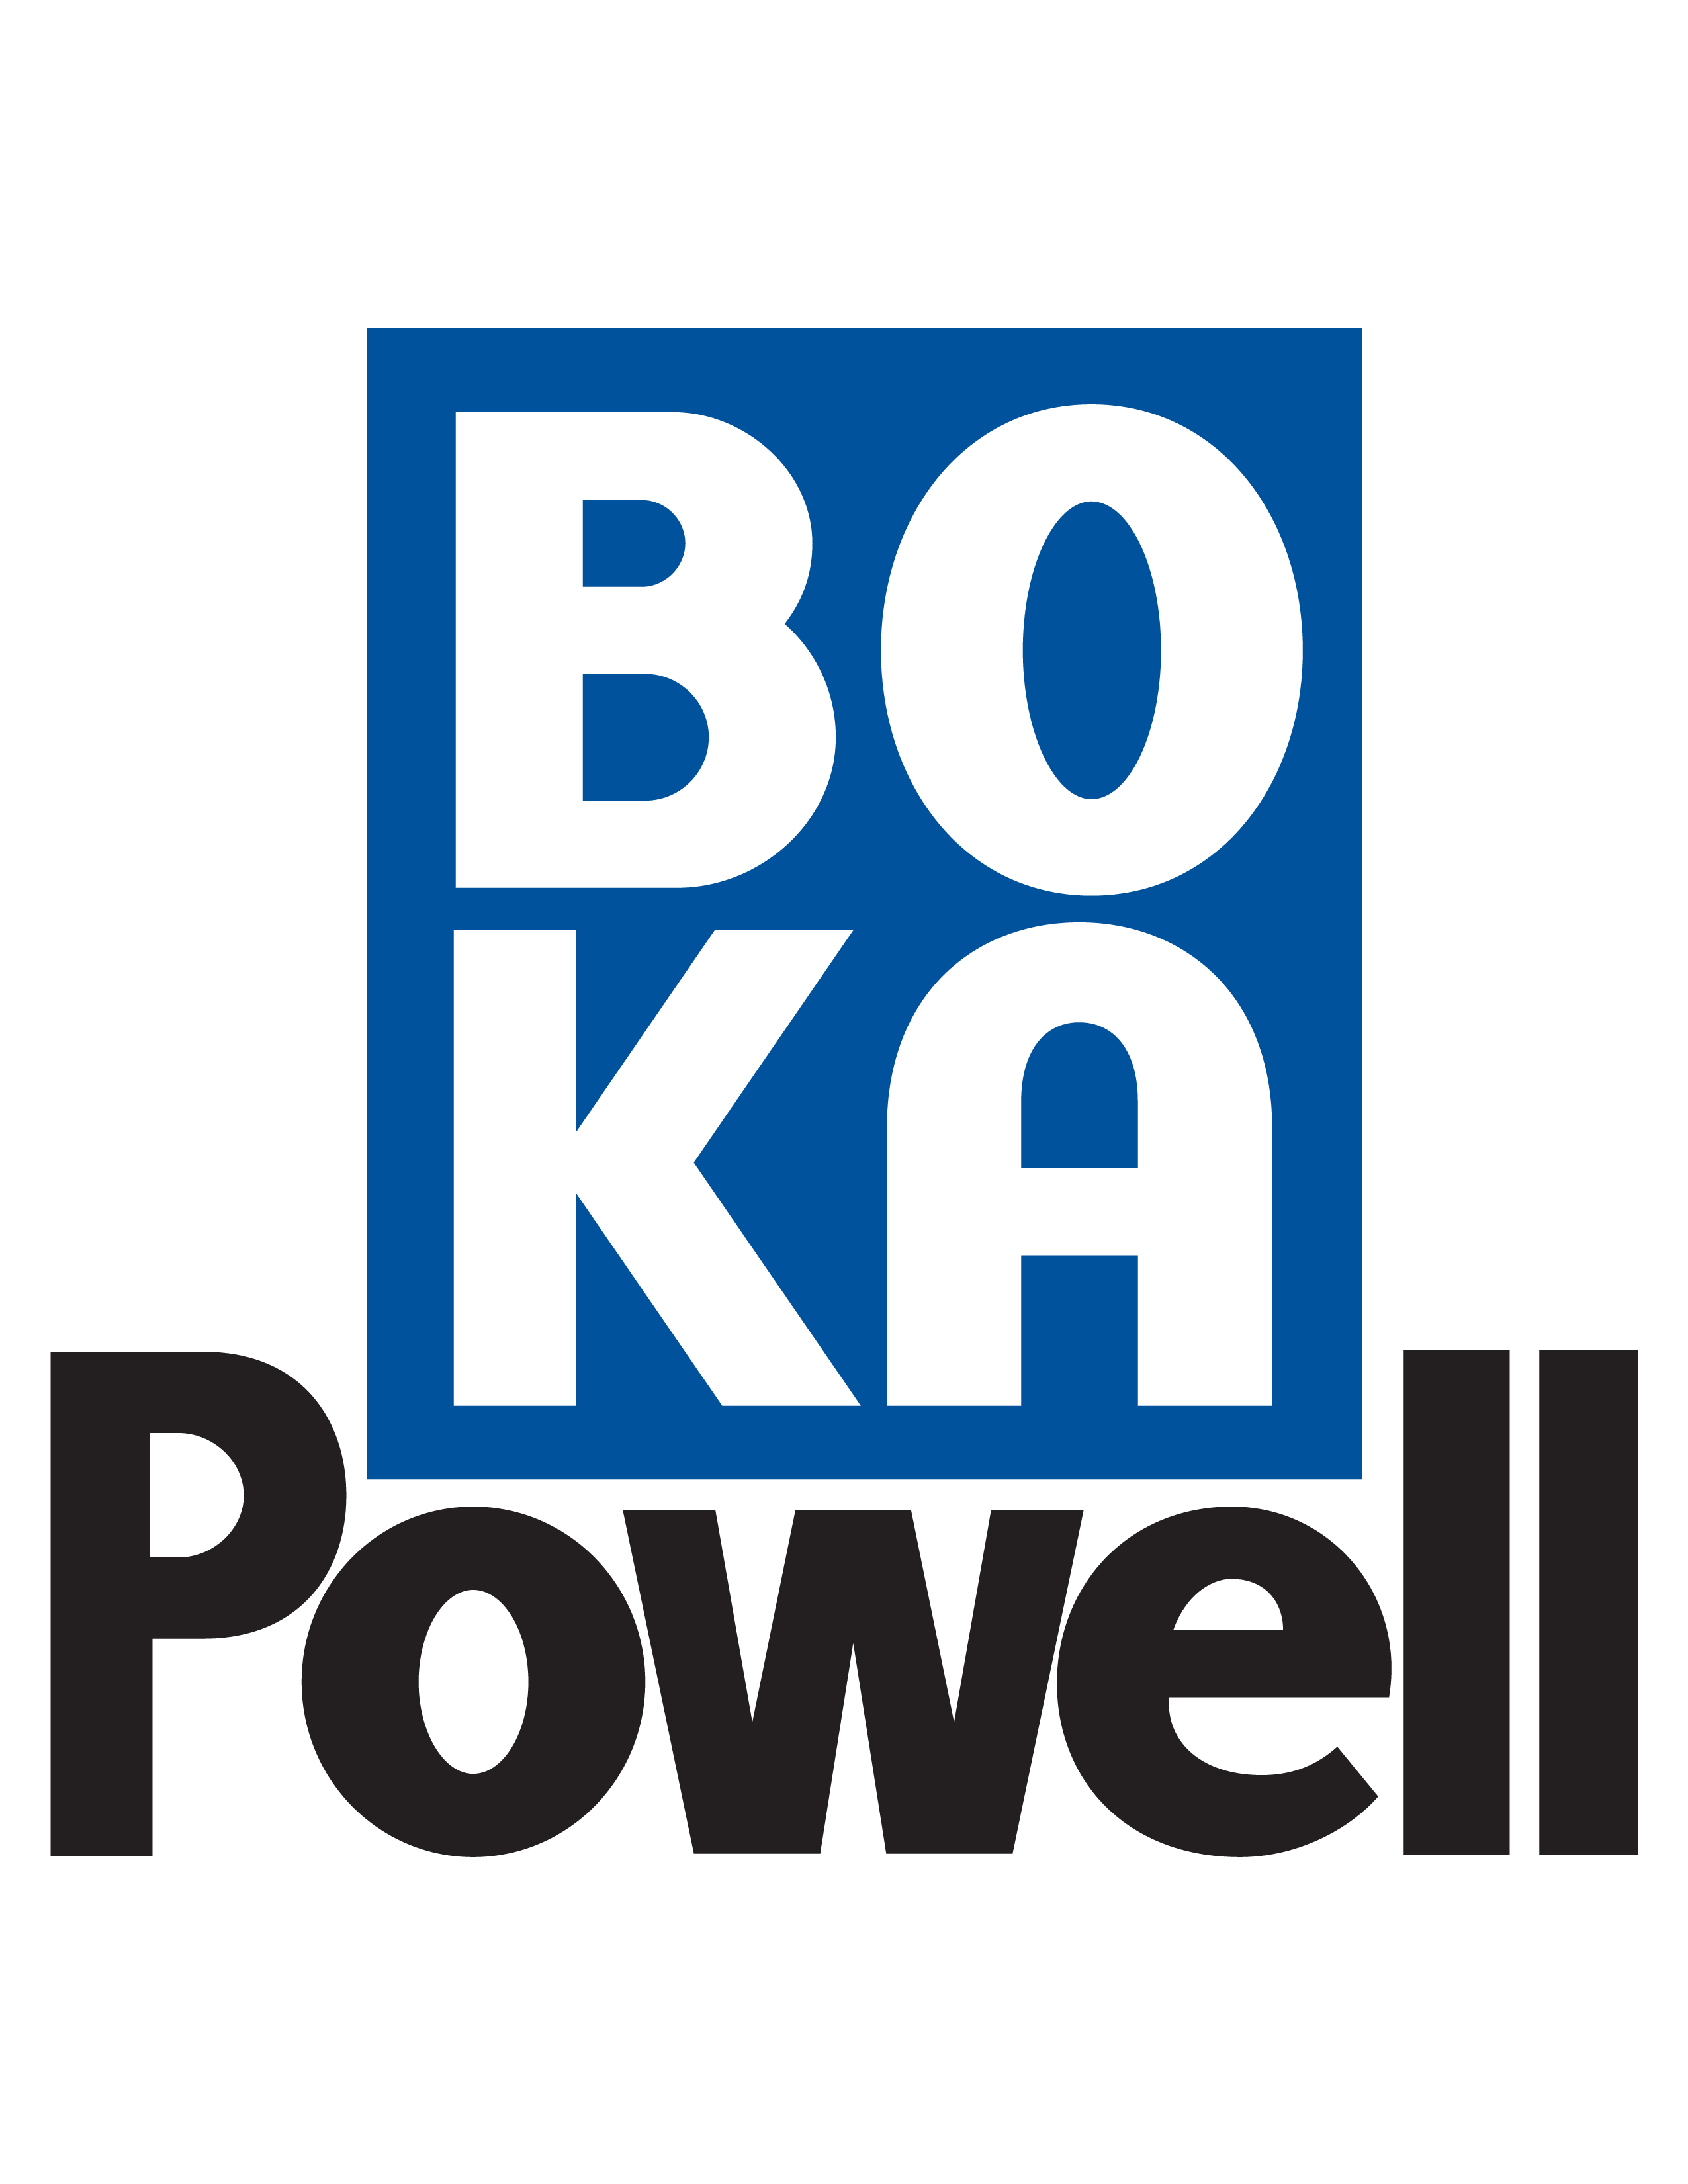 BOKA Powell Master